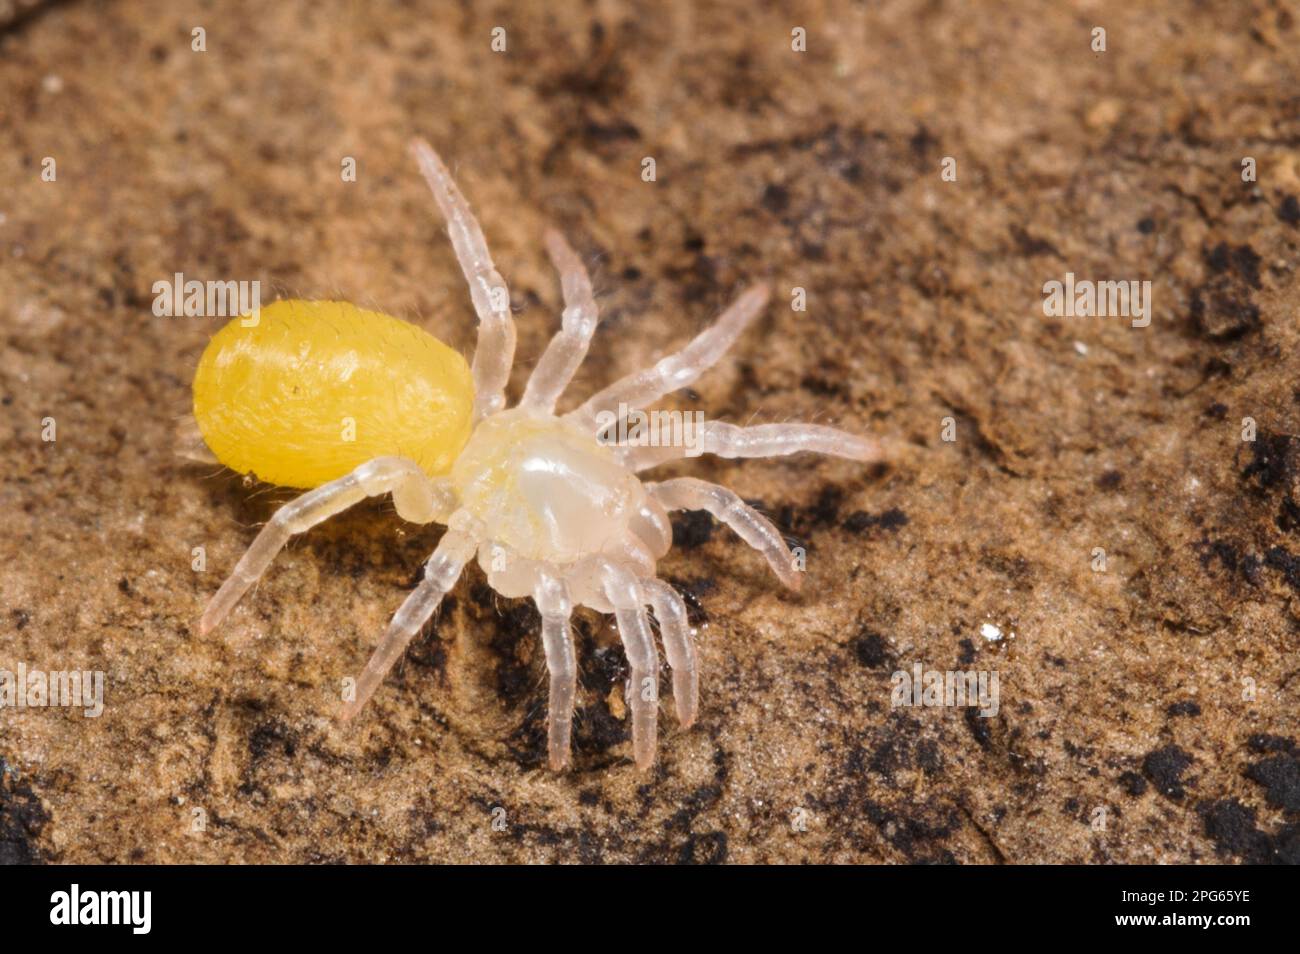 Trampilla Spider (Nemesia sp.) Nueva especie no descrita, araña recién eclosionada, Italia Foto de stock